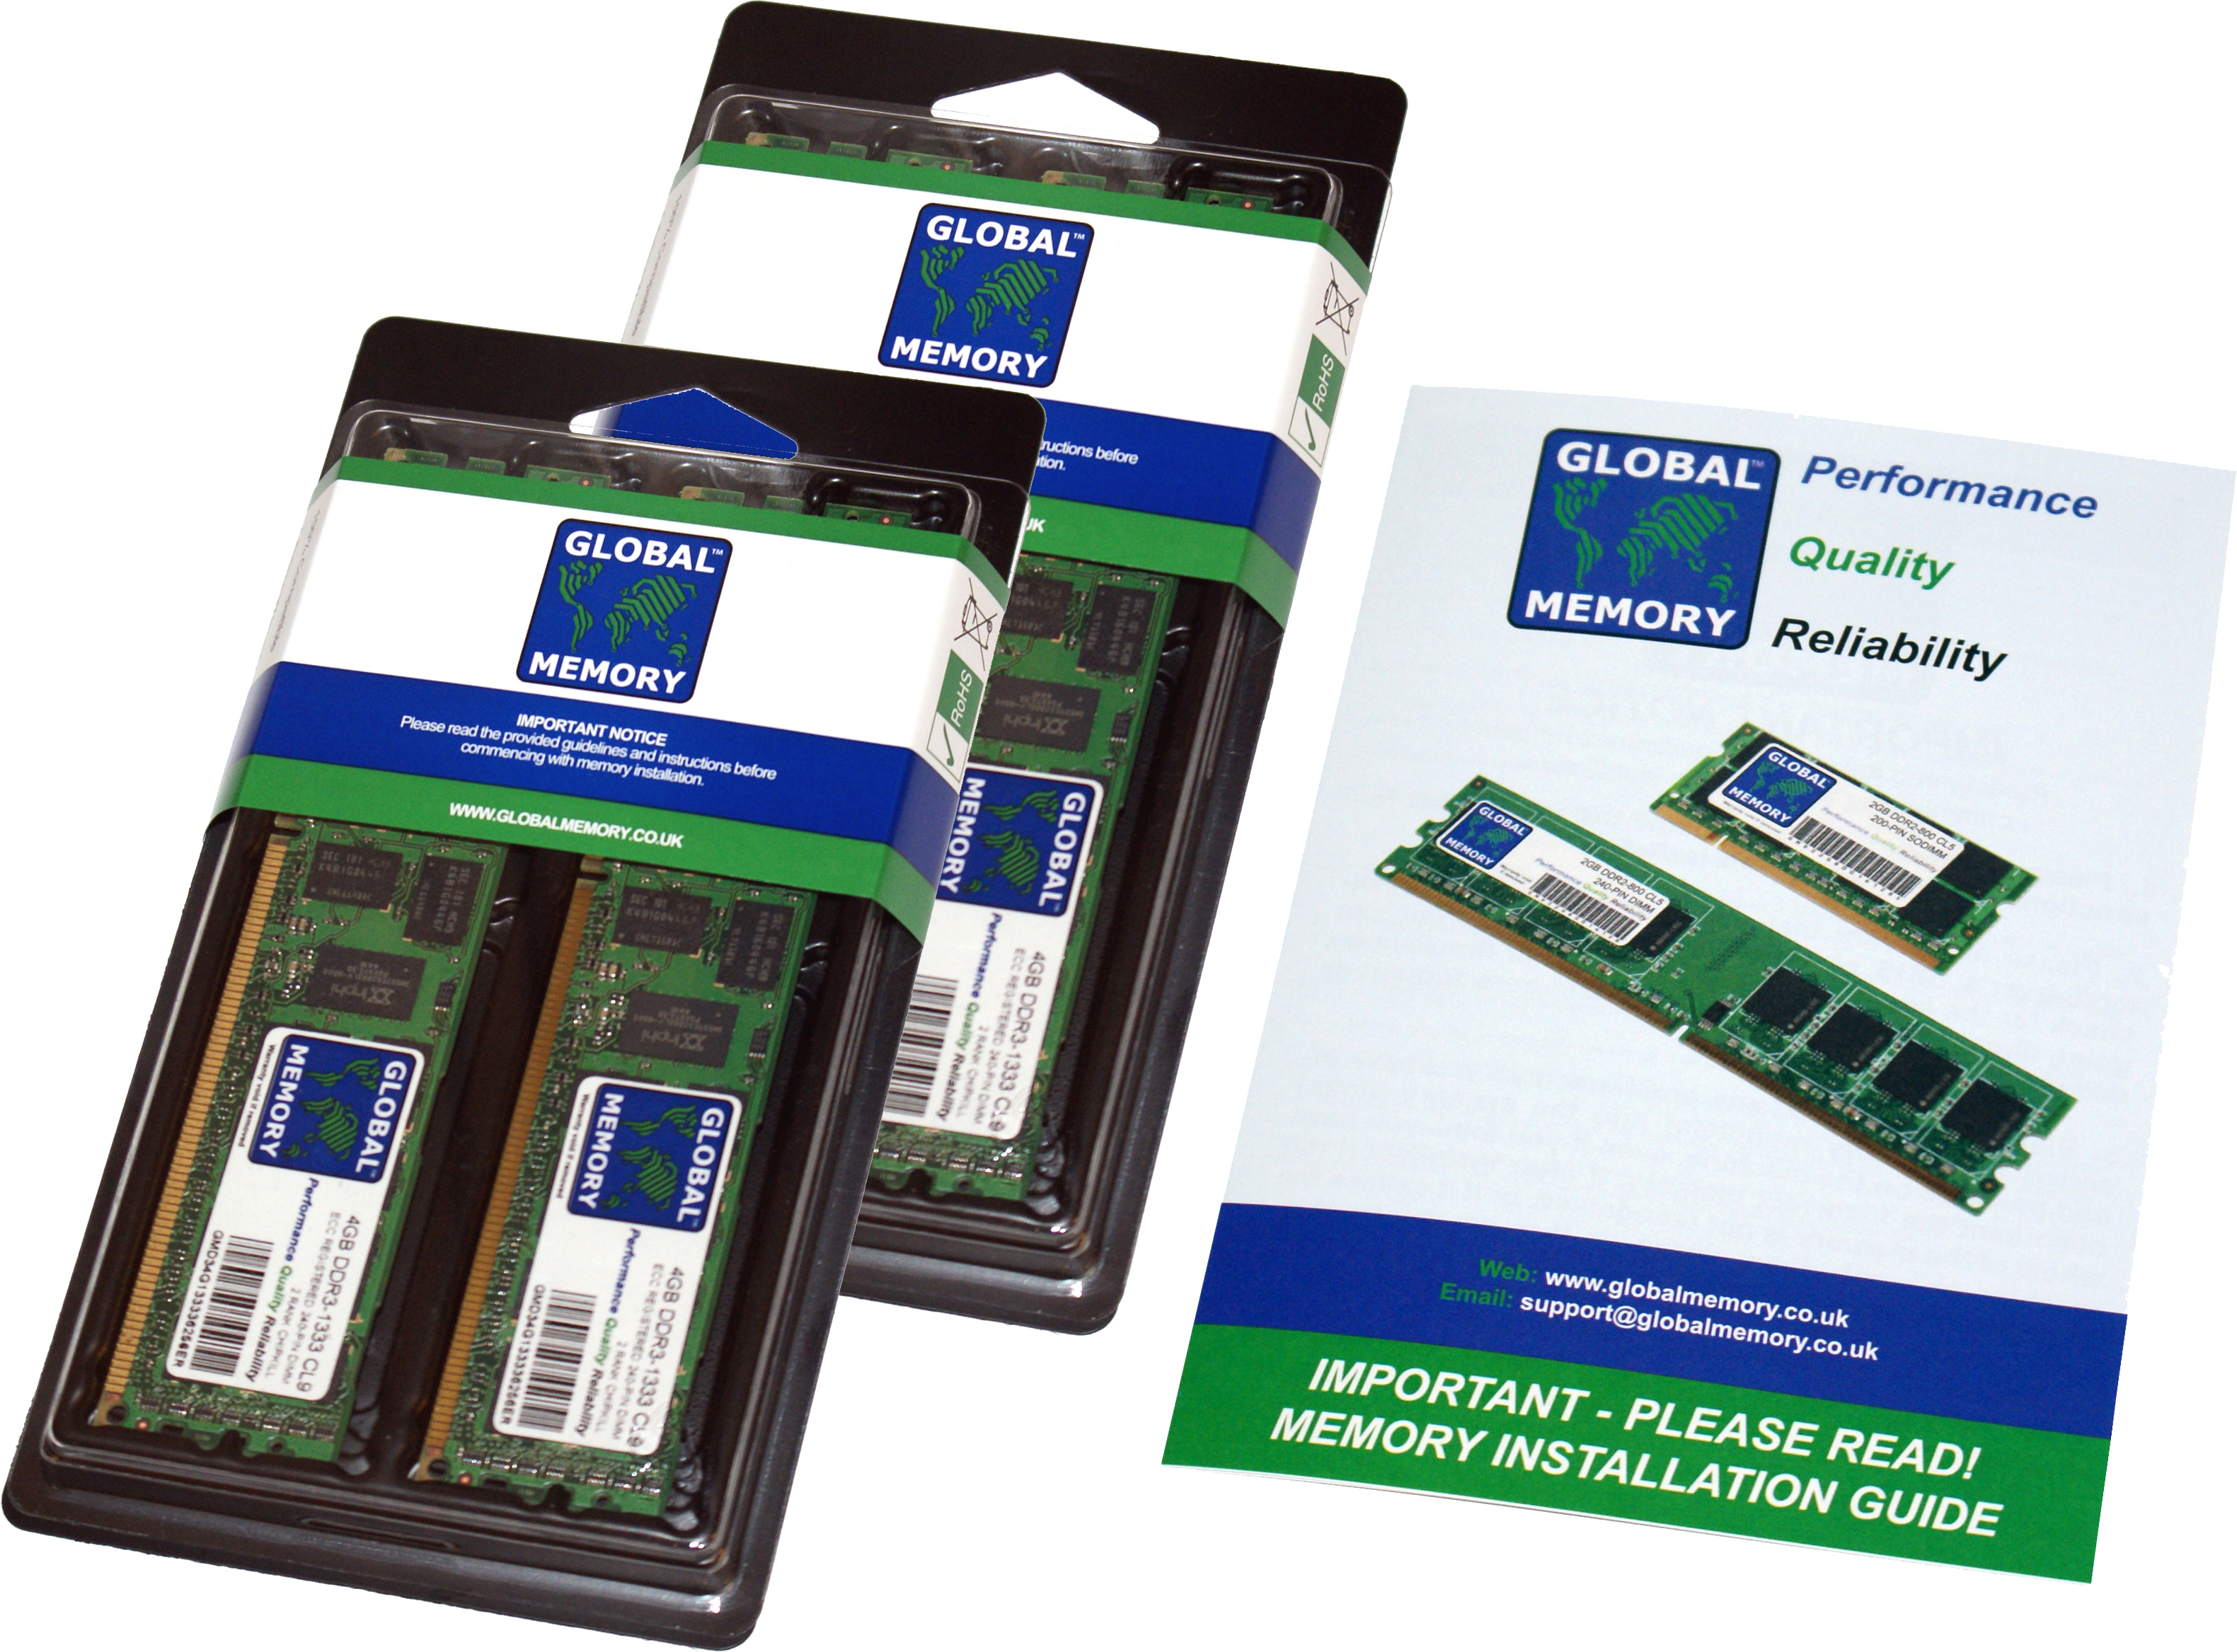 256GB (4 x 64GB) DDR4 2933MHz PC4-23400 288-PIN LOAD REDUCED ECC REGISTERED DIMM (LRDIMM) MEMORY RAM KIT FOR HEWLETT-PACKARD SERVERS/WORKSTATIONS (16 RANK KIT CHIPKILL)